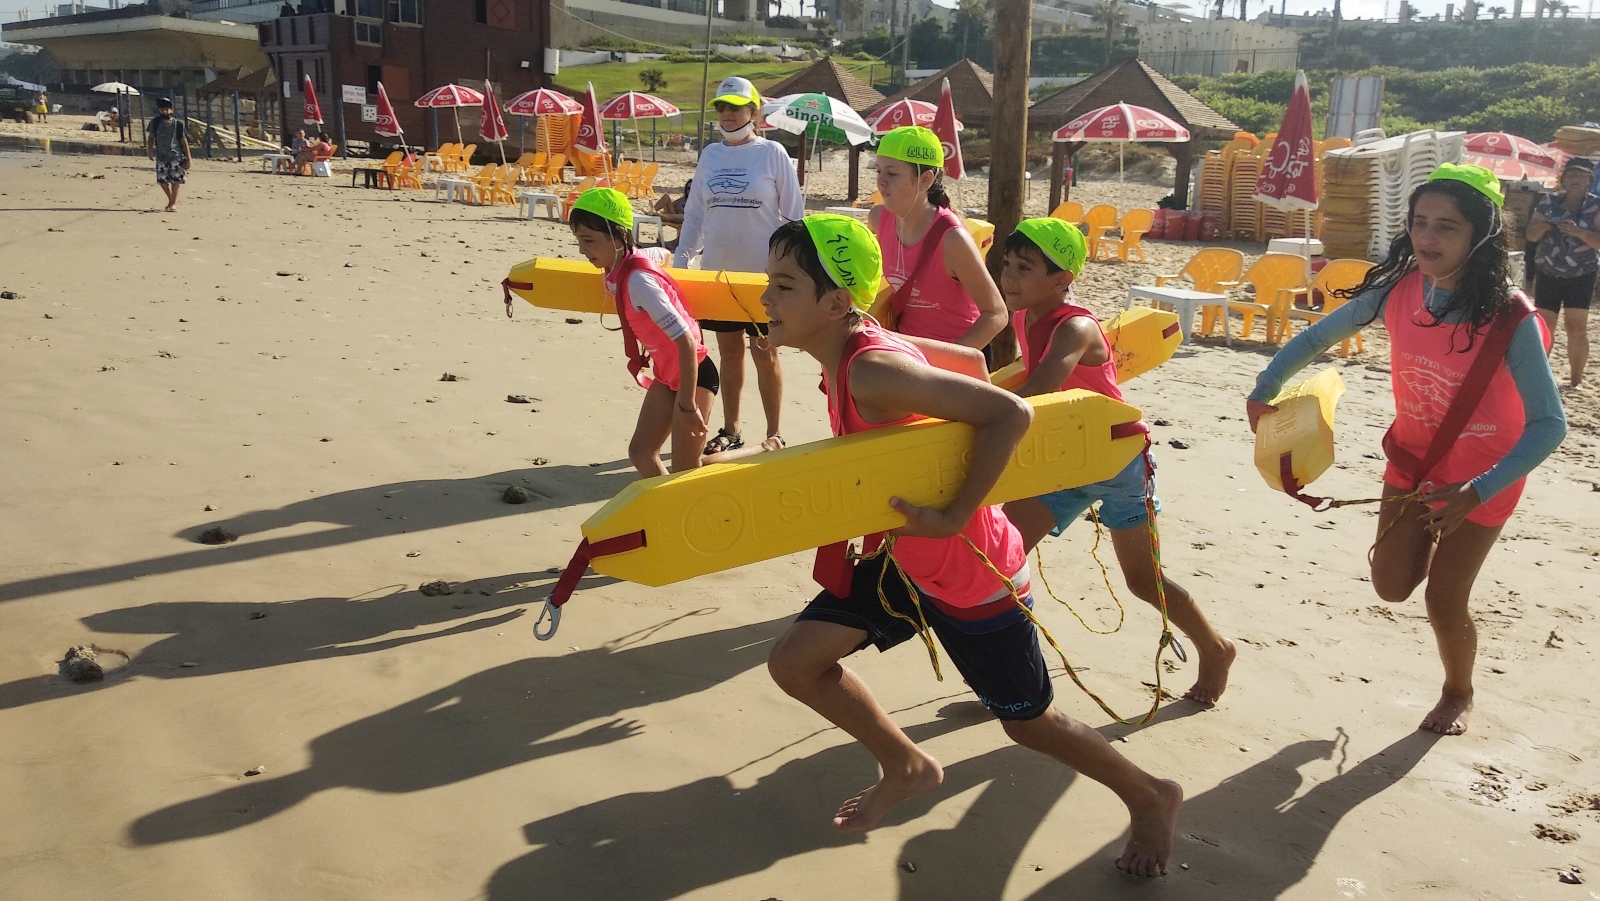 Competiciones de salvamento de surf debutan en los Juegos Maccabiah